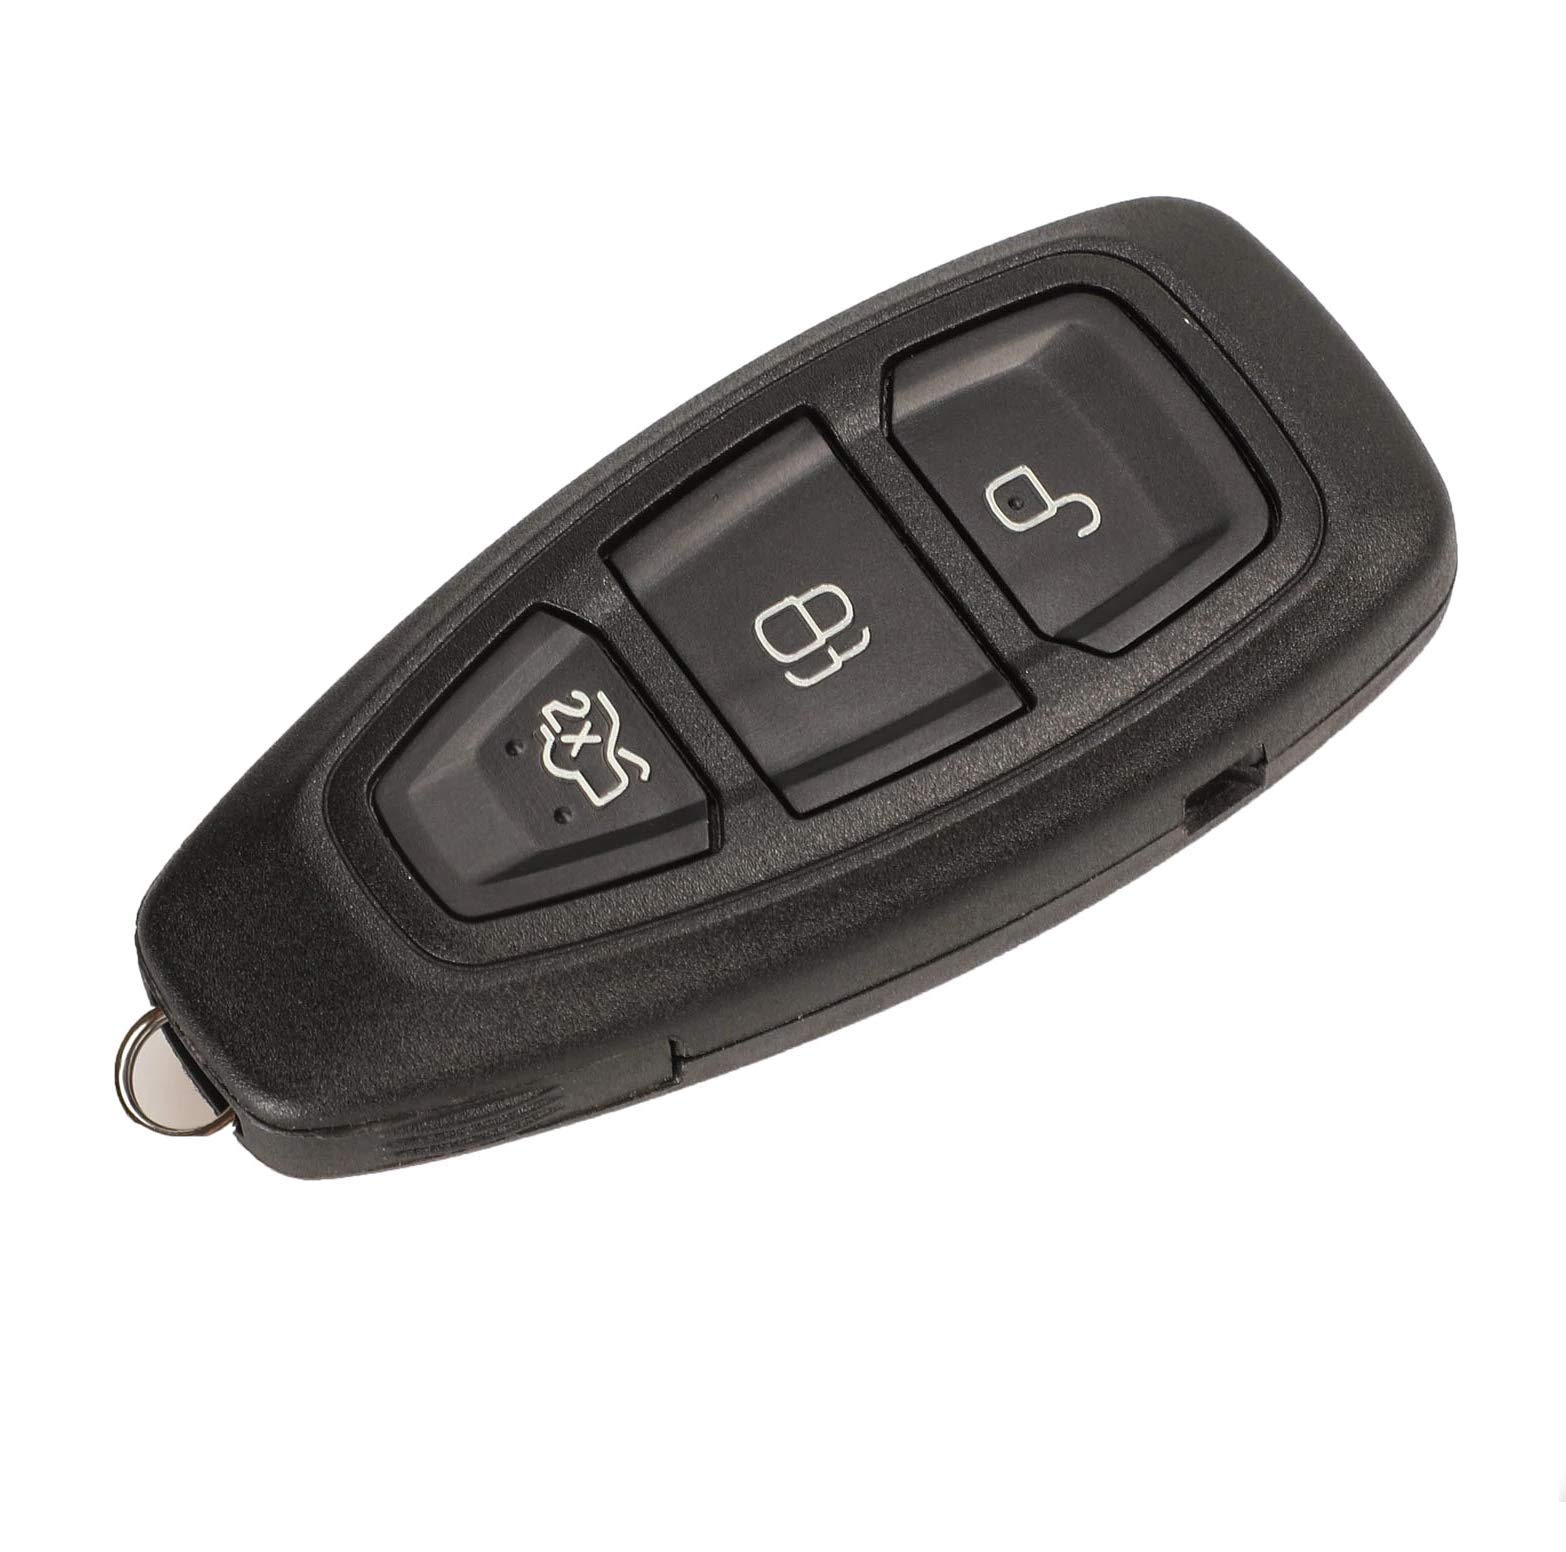 PHONILLICO Schlüsselgehäuse für Ford Focus Fiesta C-Max 2 Kuga 2 S-Max 2 Mondeo 4 B-Max Ecosport Galaxy 2 Smart Key Fernbedienung 3 Tasten von PHONILLICO